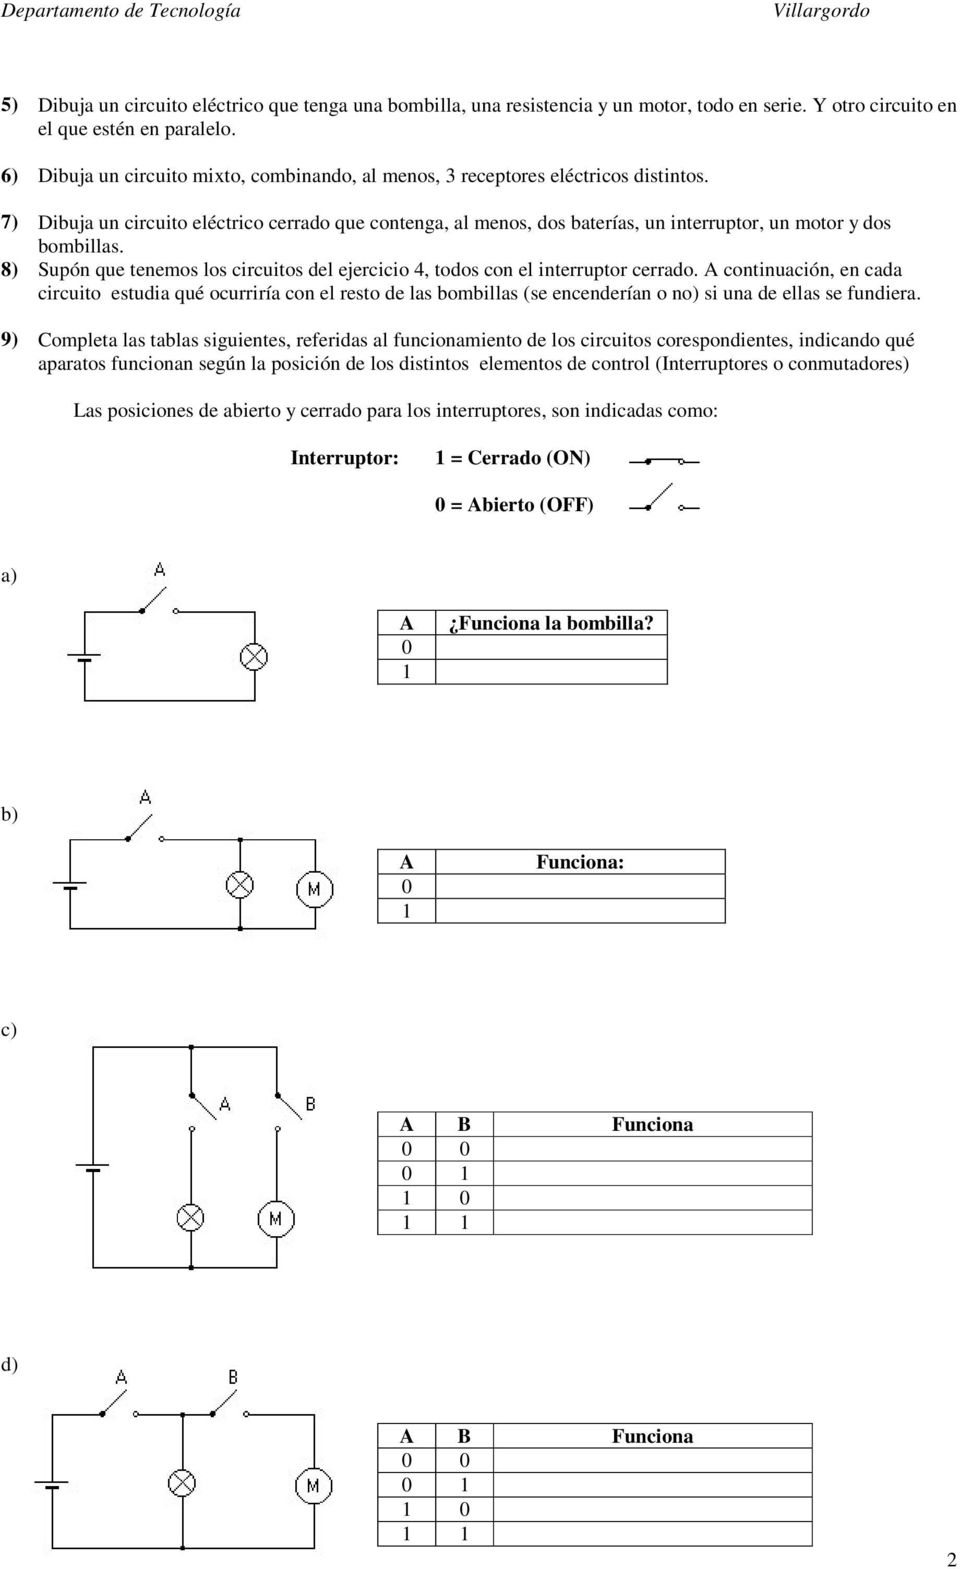 7) Dibuja un circuito eléctrico cerrado que contenga, al menos, dos baterías, un interruptor, un motor y dos bombillas.